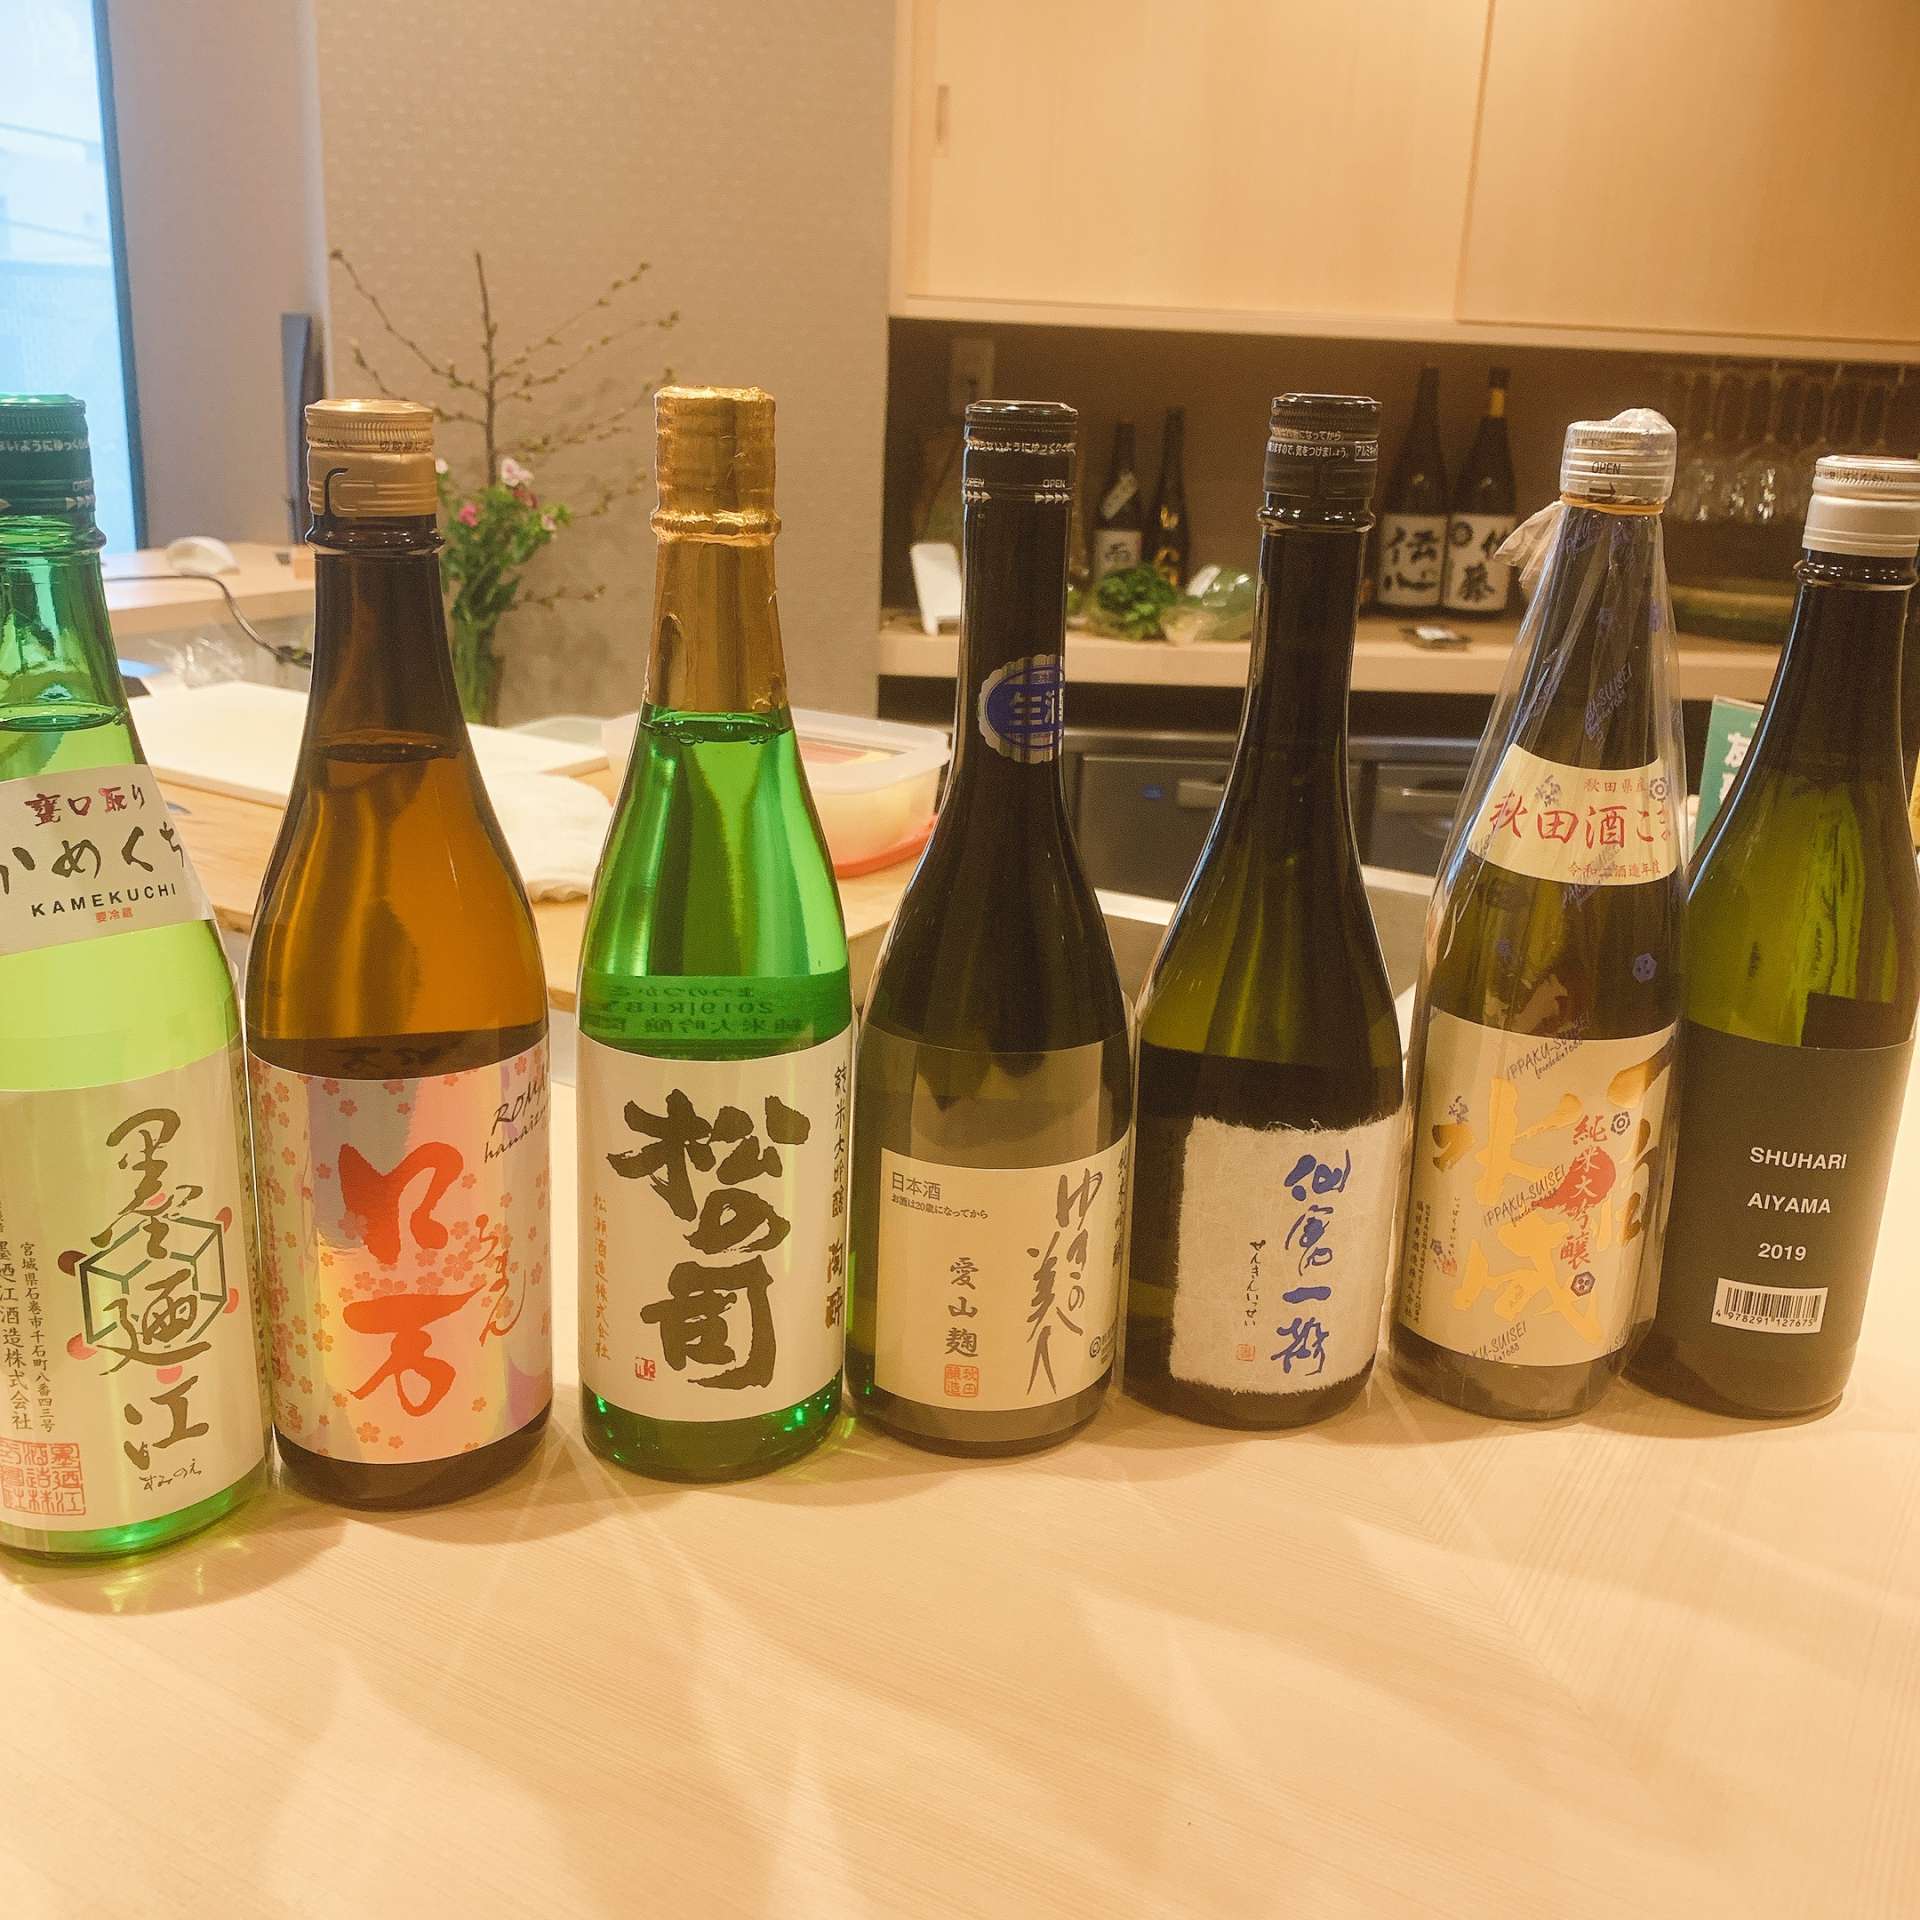 春の日本酒入荷‼️福島区の和食・日本酒|しゅん須佐見